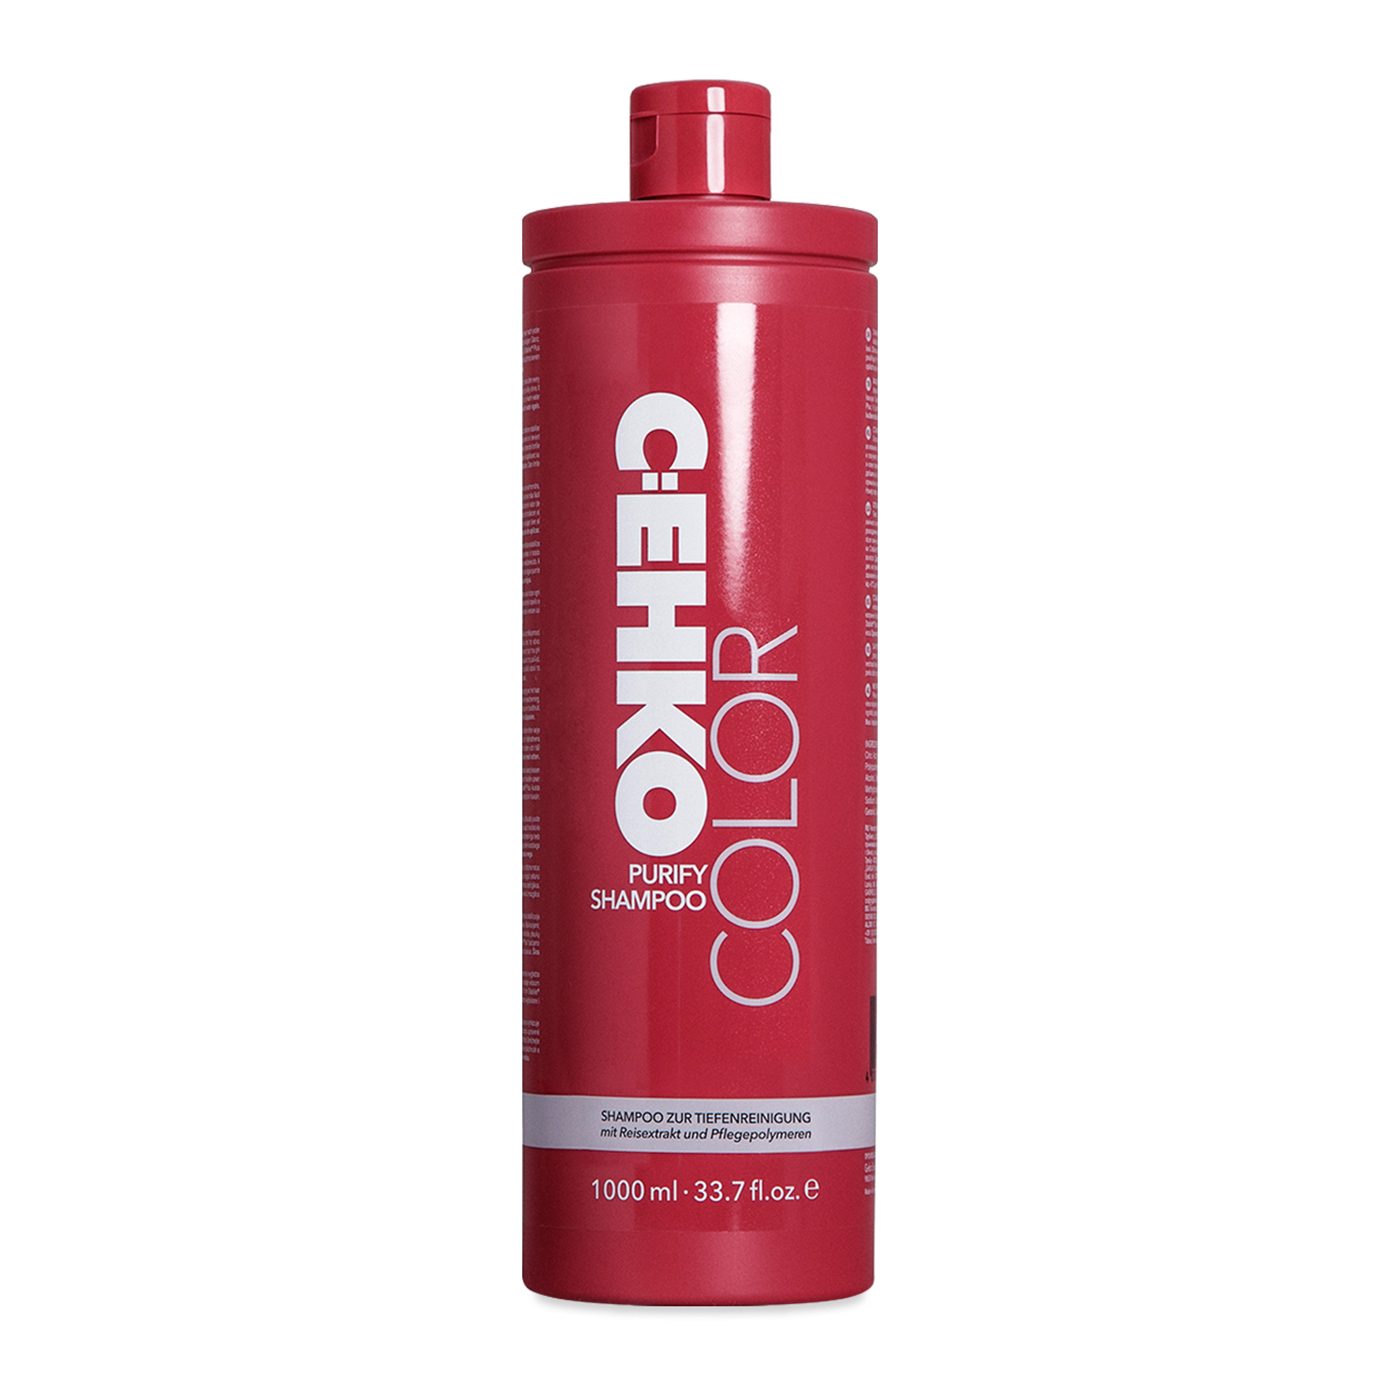 Цэко. Cehko серебристо-белый ополаскиватель (silberweiss effektspulung) 300 мл. C:EHKO шампунь для нормальных волос. C EHKO Color ополаскиватель. C:EHKO оксидант 12.